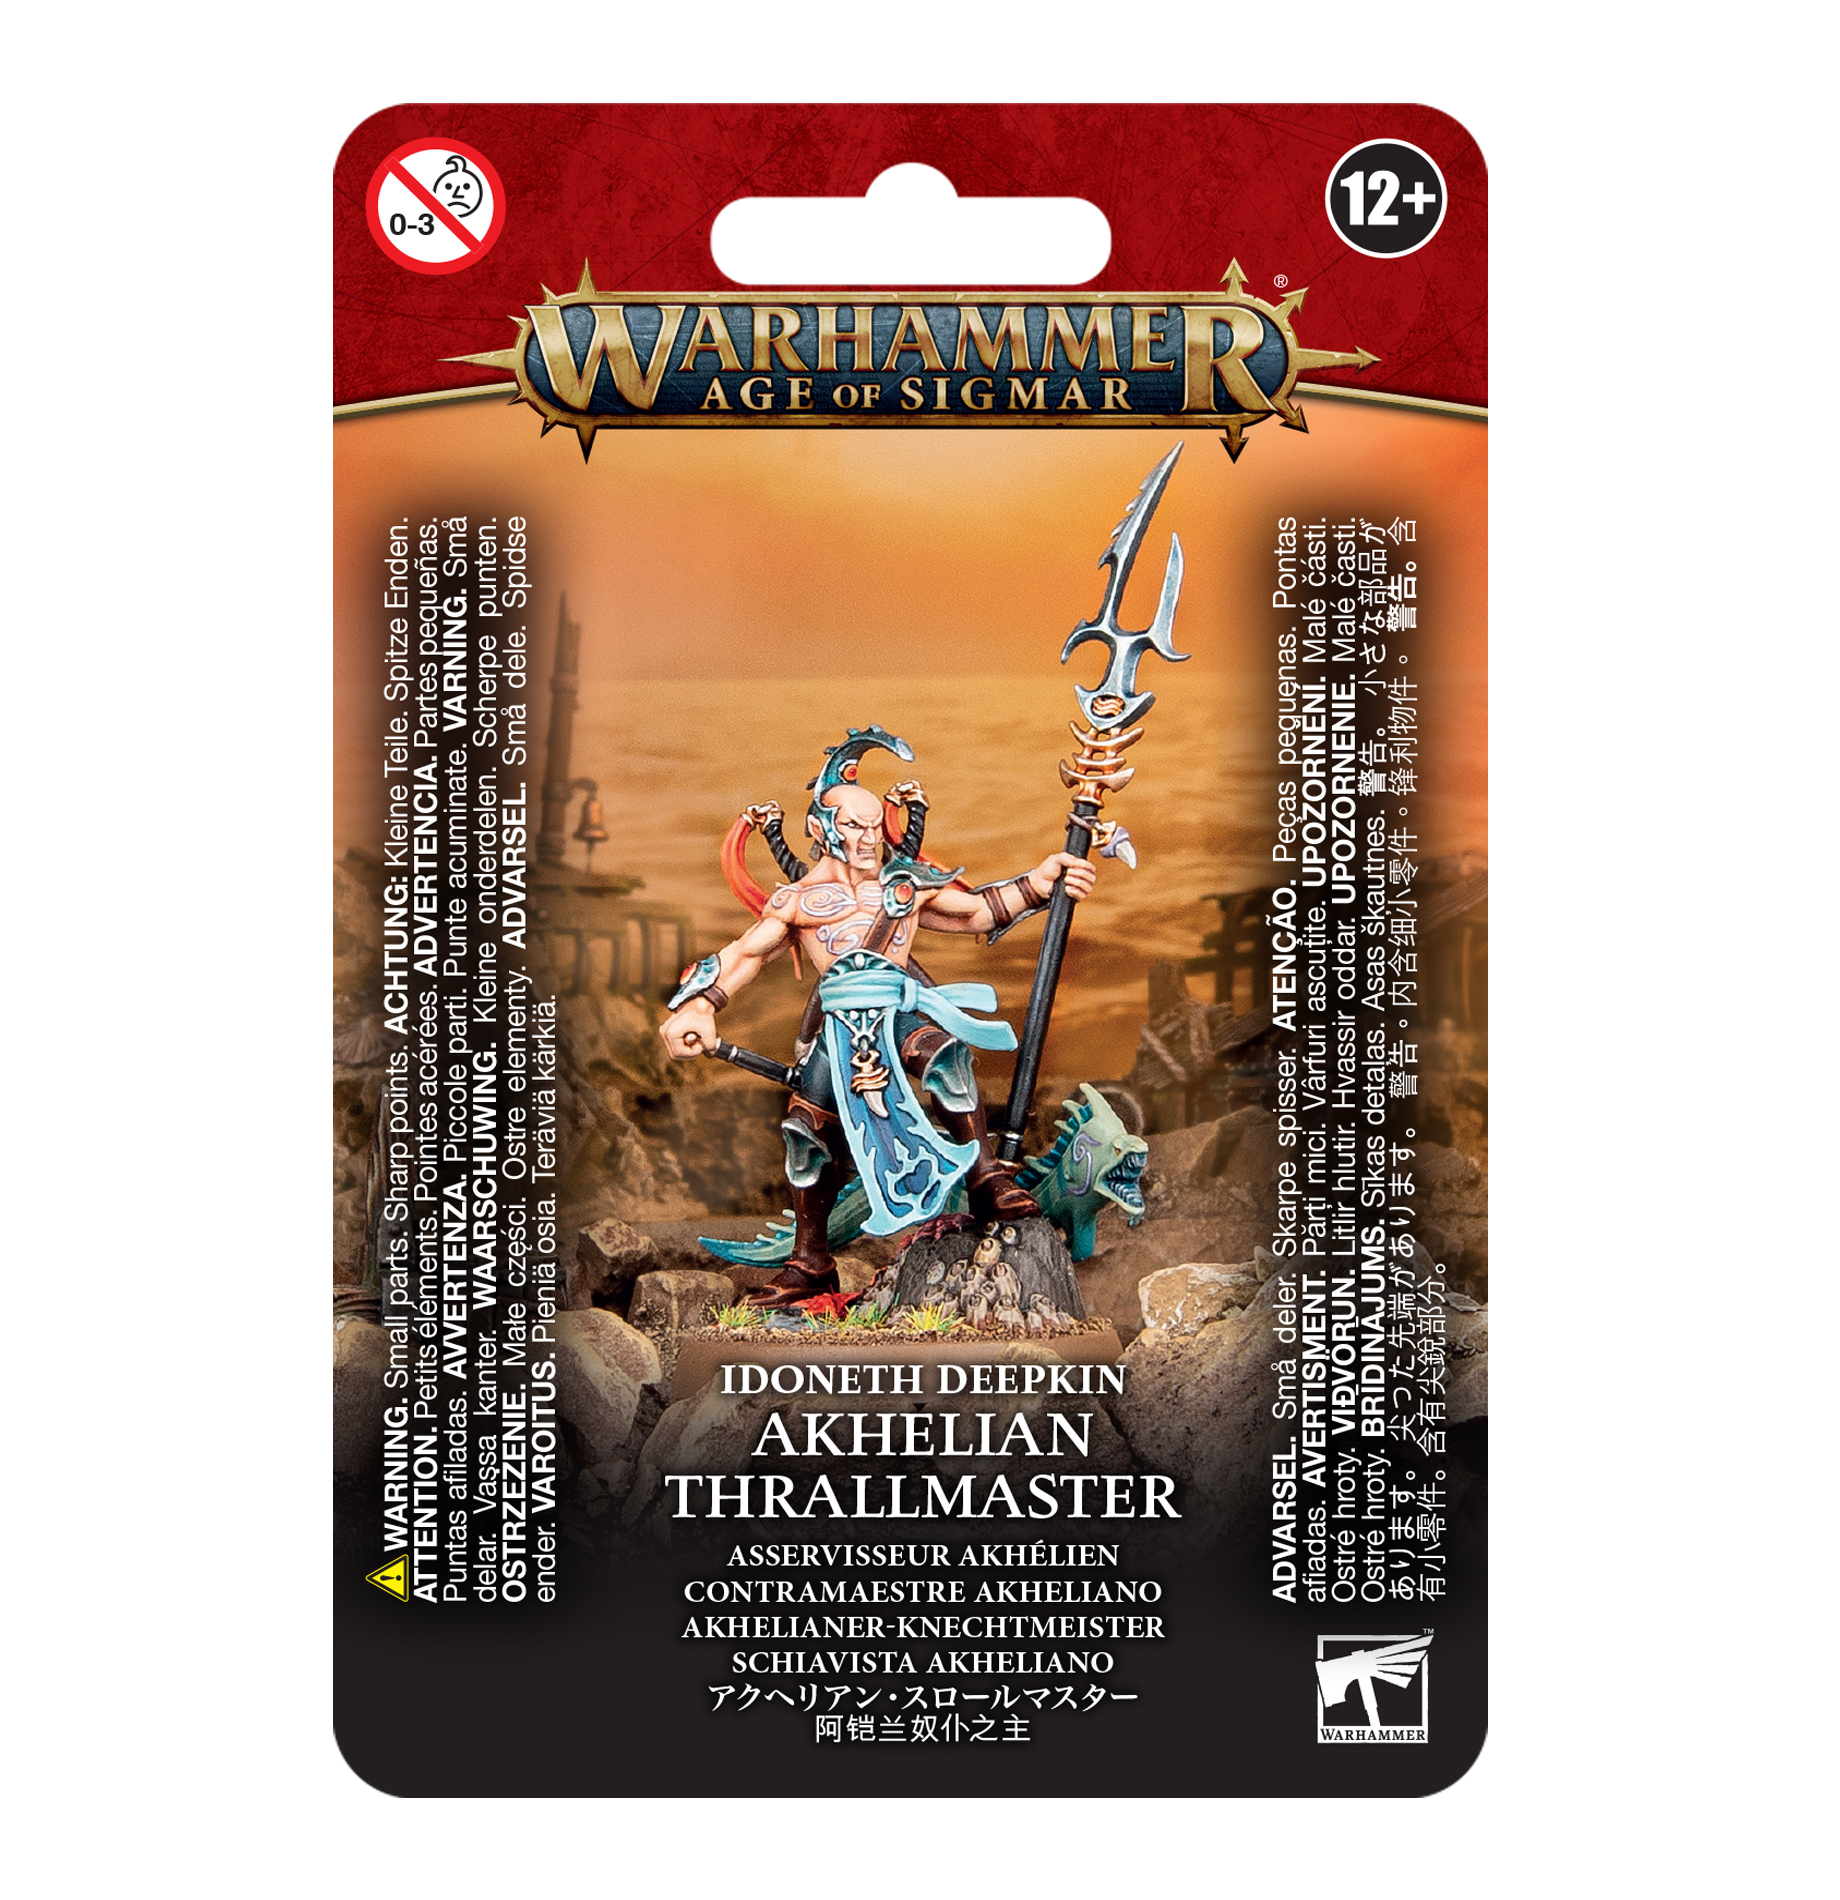 Ahkelian Thrallmaster - 87-37 - Idoneth Deepkin - Warhammer Age of Sigmar